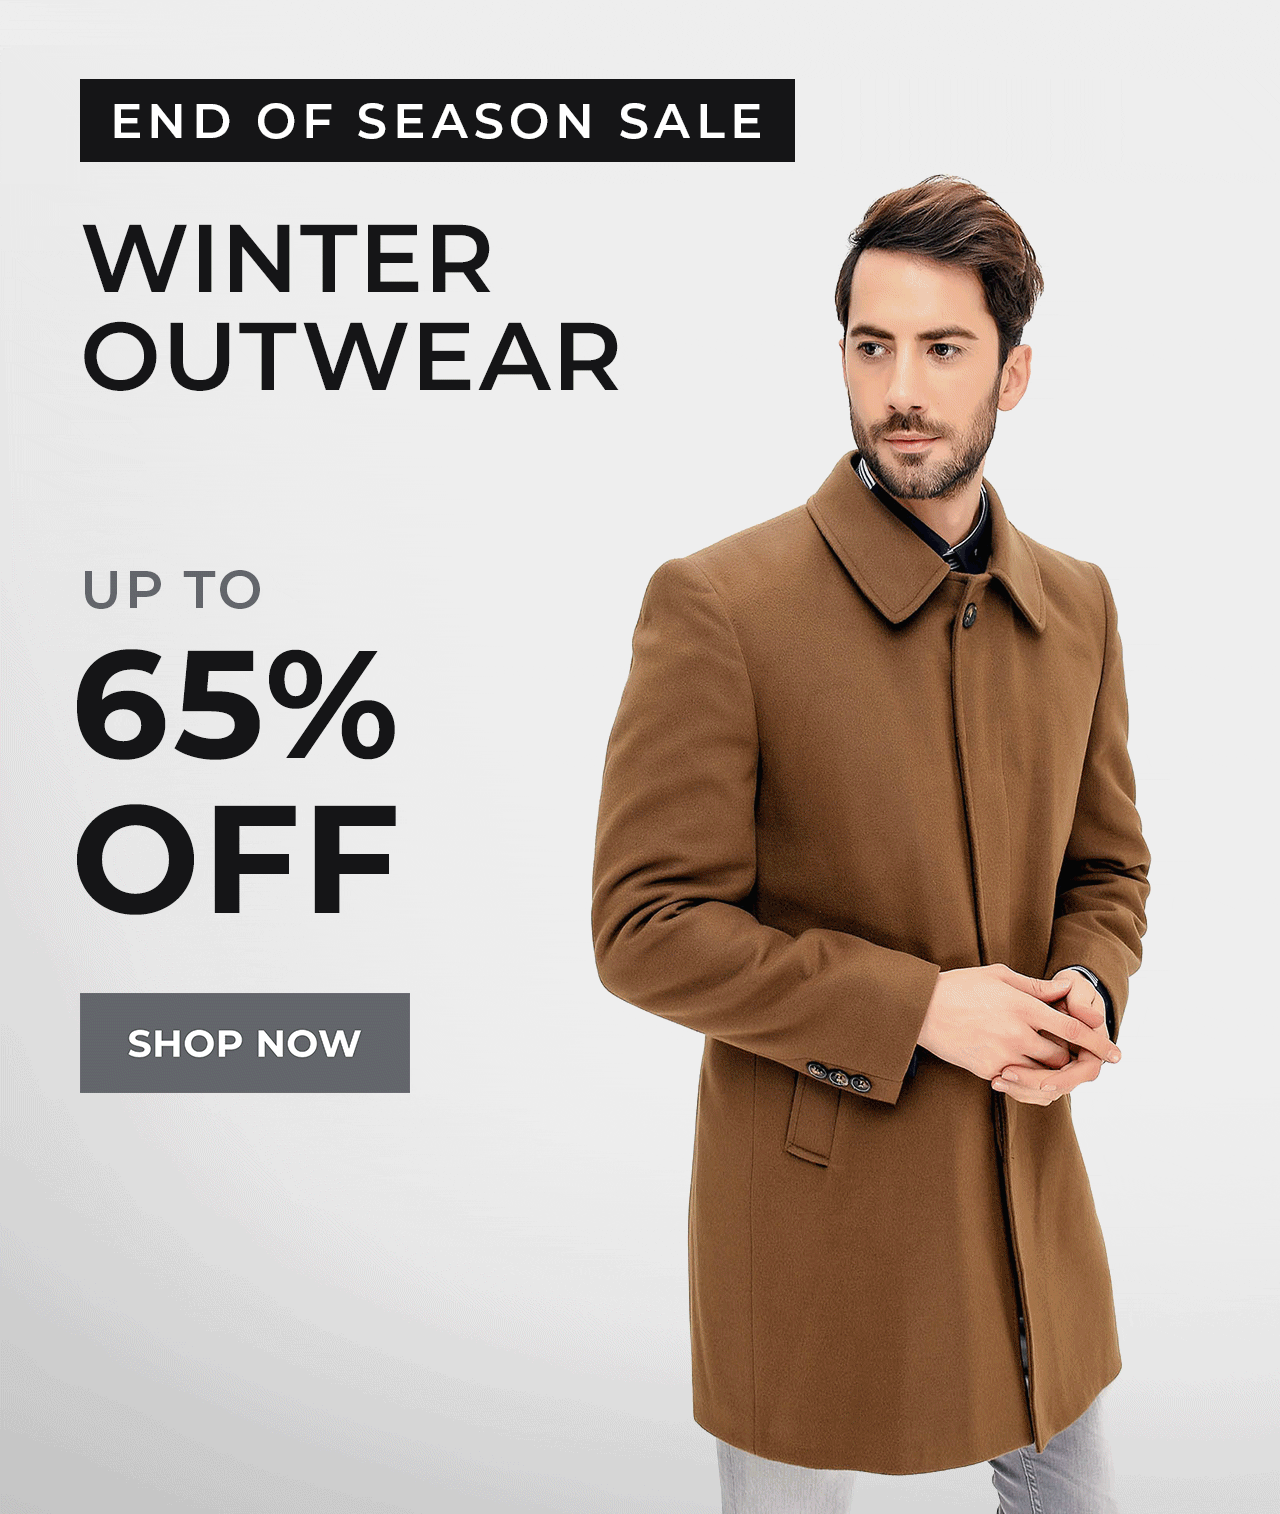 Winter Outwear | SHOP NOW